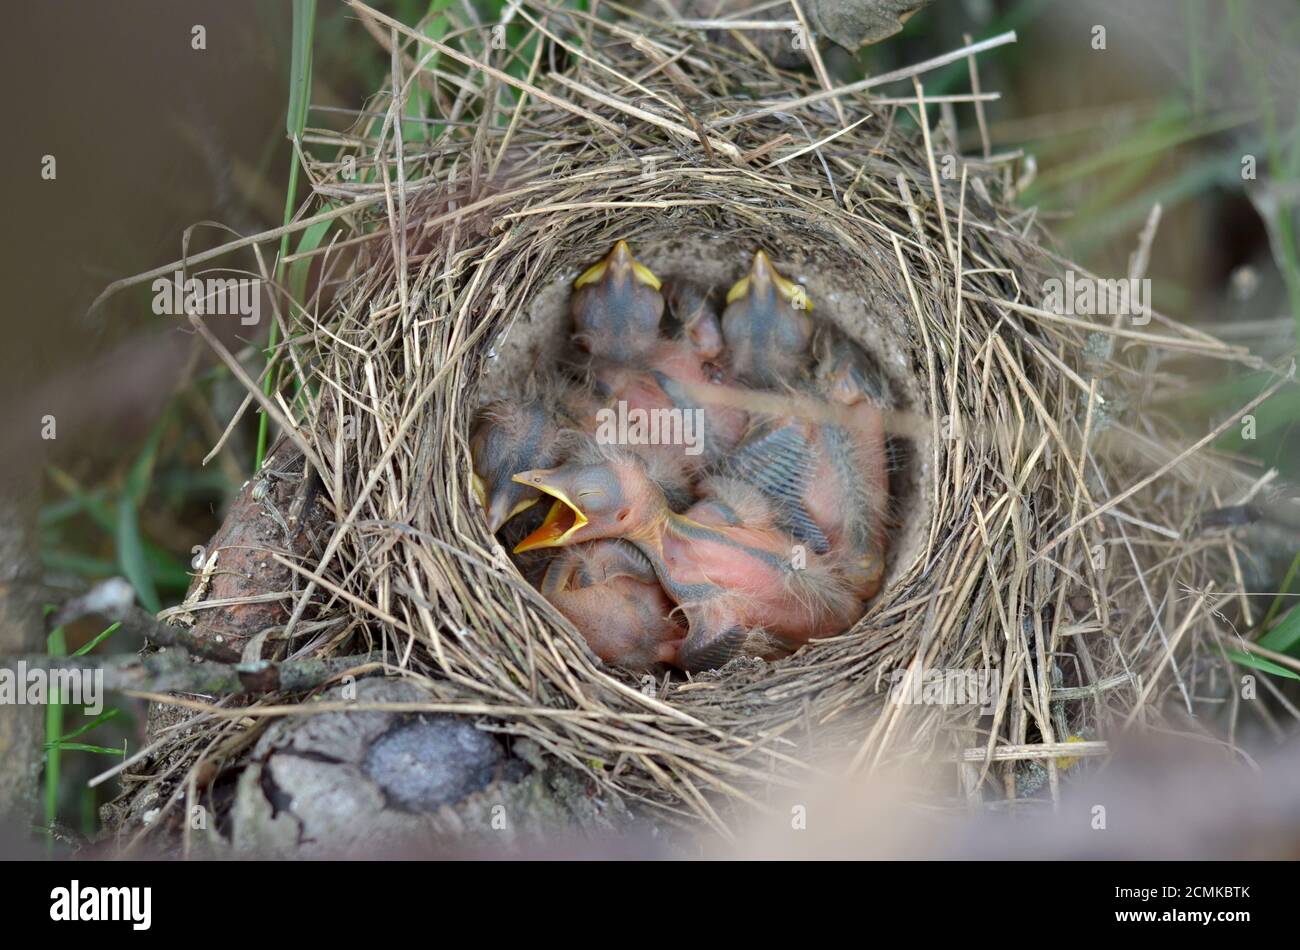 Fünf neugeborene Babyvögel eines Song Thrush (Turdus philomelos) im Nest in ihrem natürlichen Lebensraum. Fauna der Ukraine. Geringe Schärfentiefe, Nahaufnahme. Stockfoto